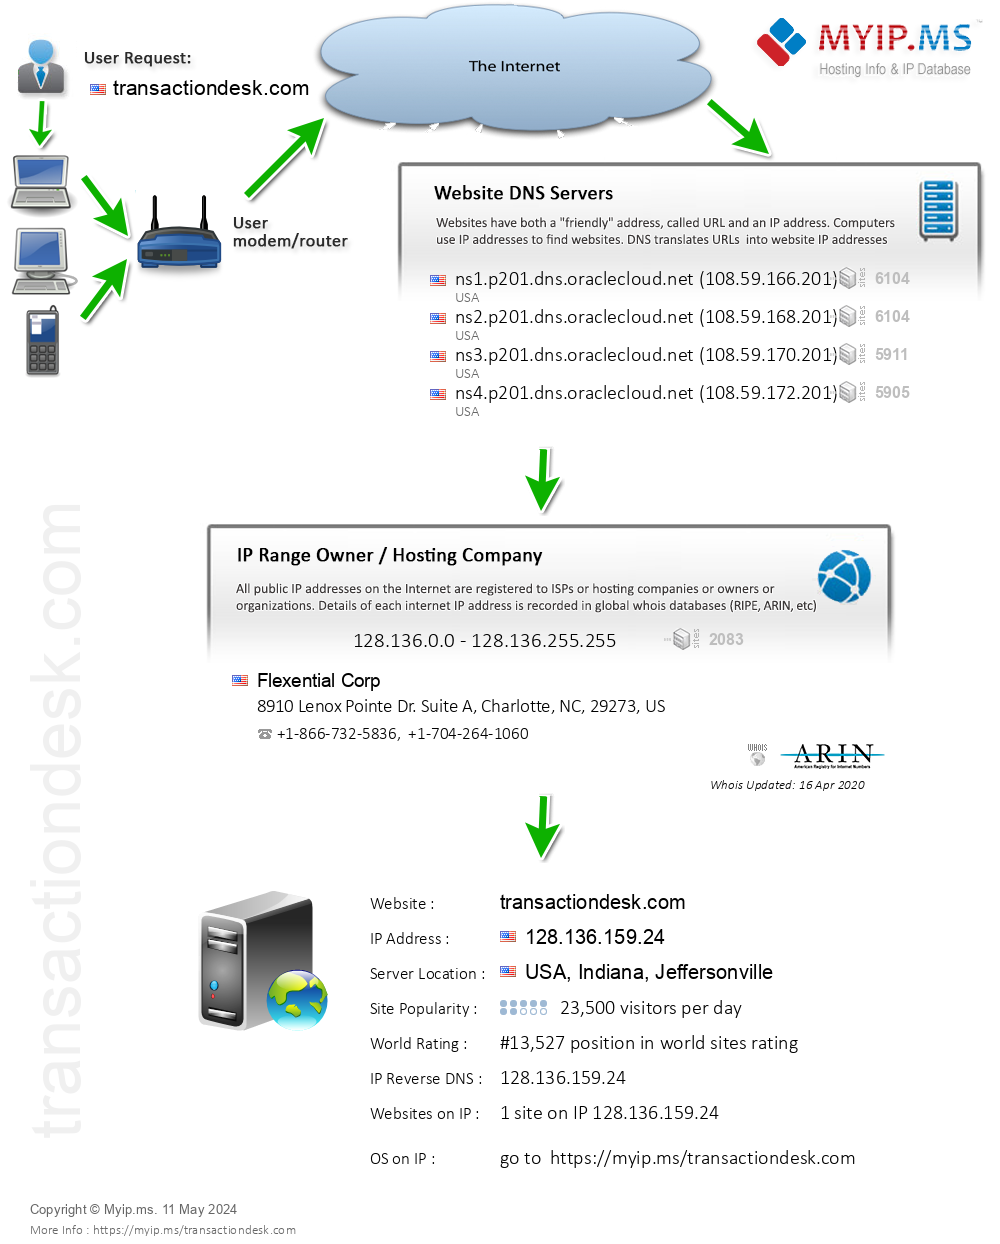 Transactiondesk.com - Website Hosting Visual IP Diagram